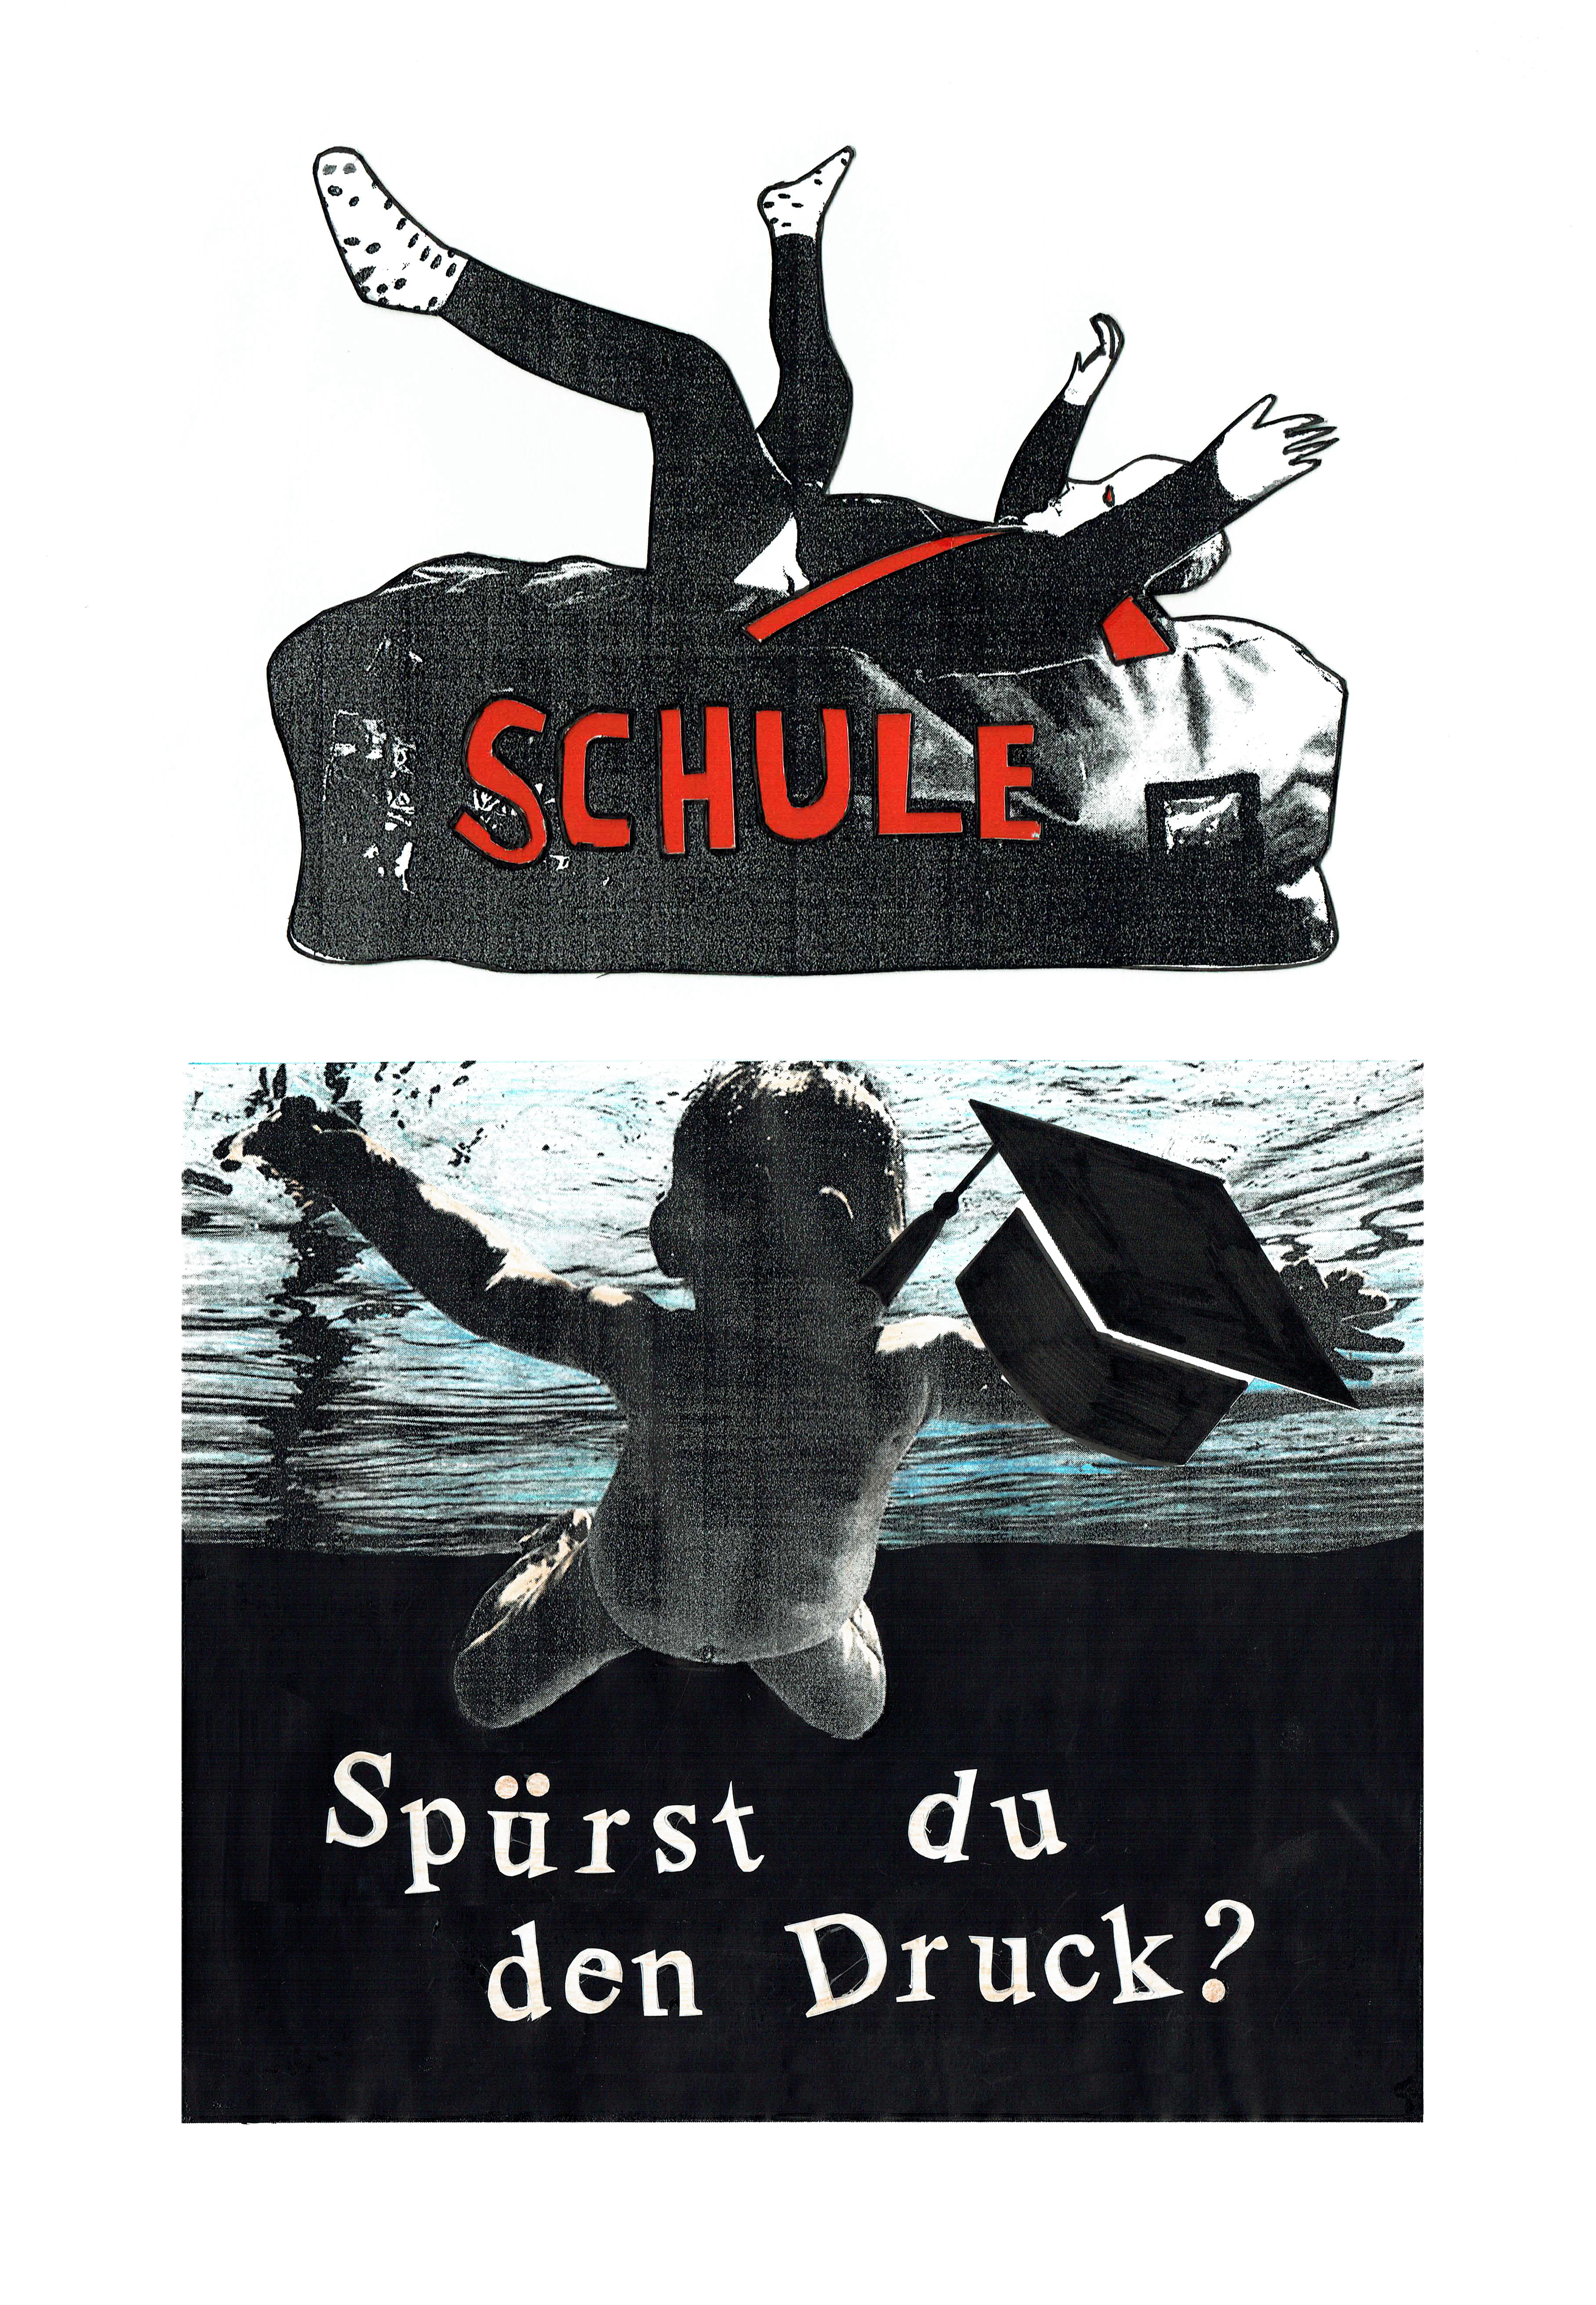 Sozialpolitische Plakate, Collage, oben: Luka Raffa, unten: Julia Pfeifer, Q12 